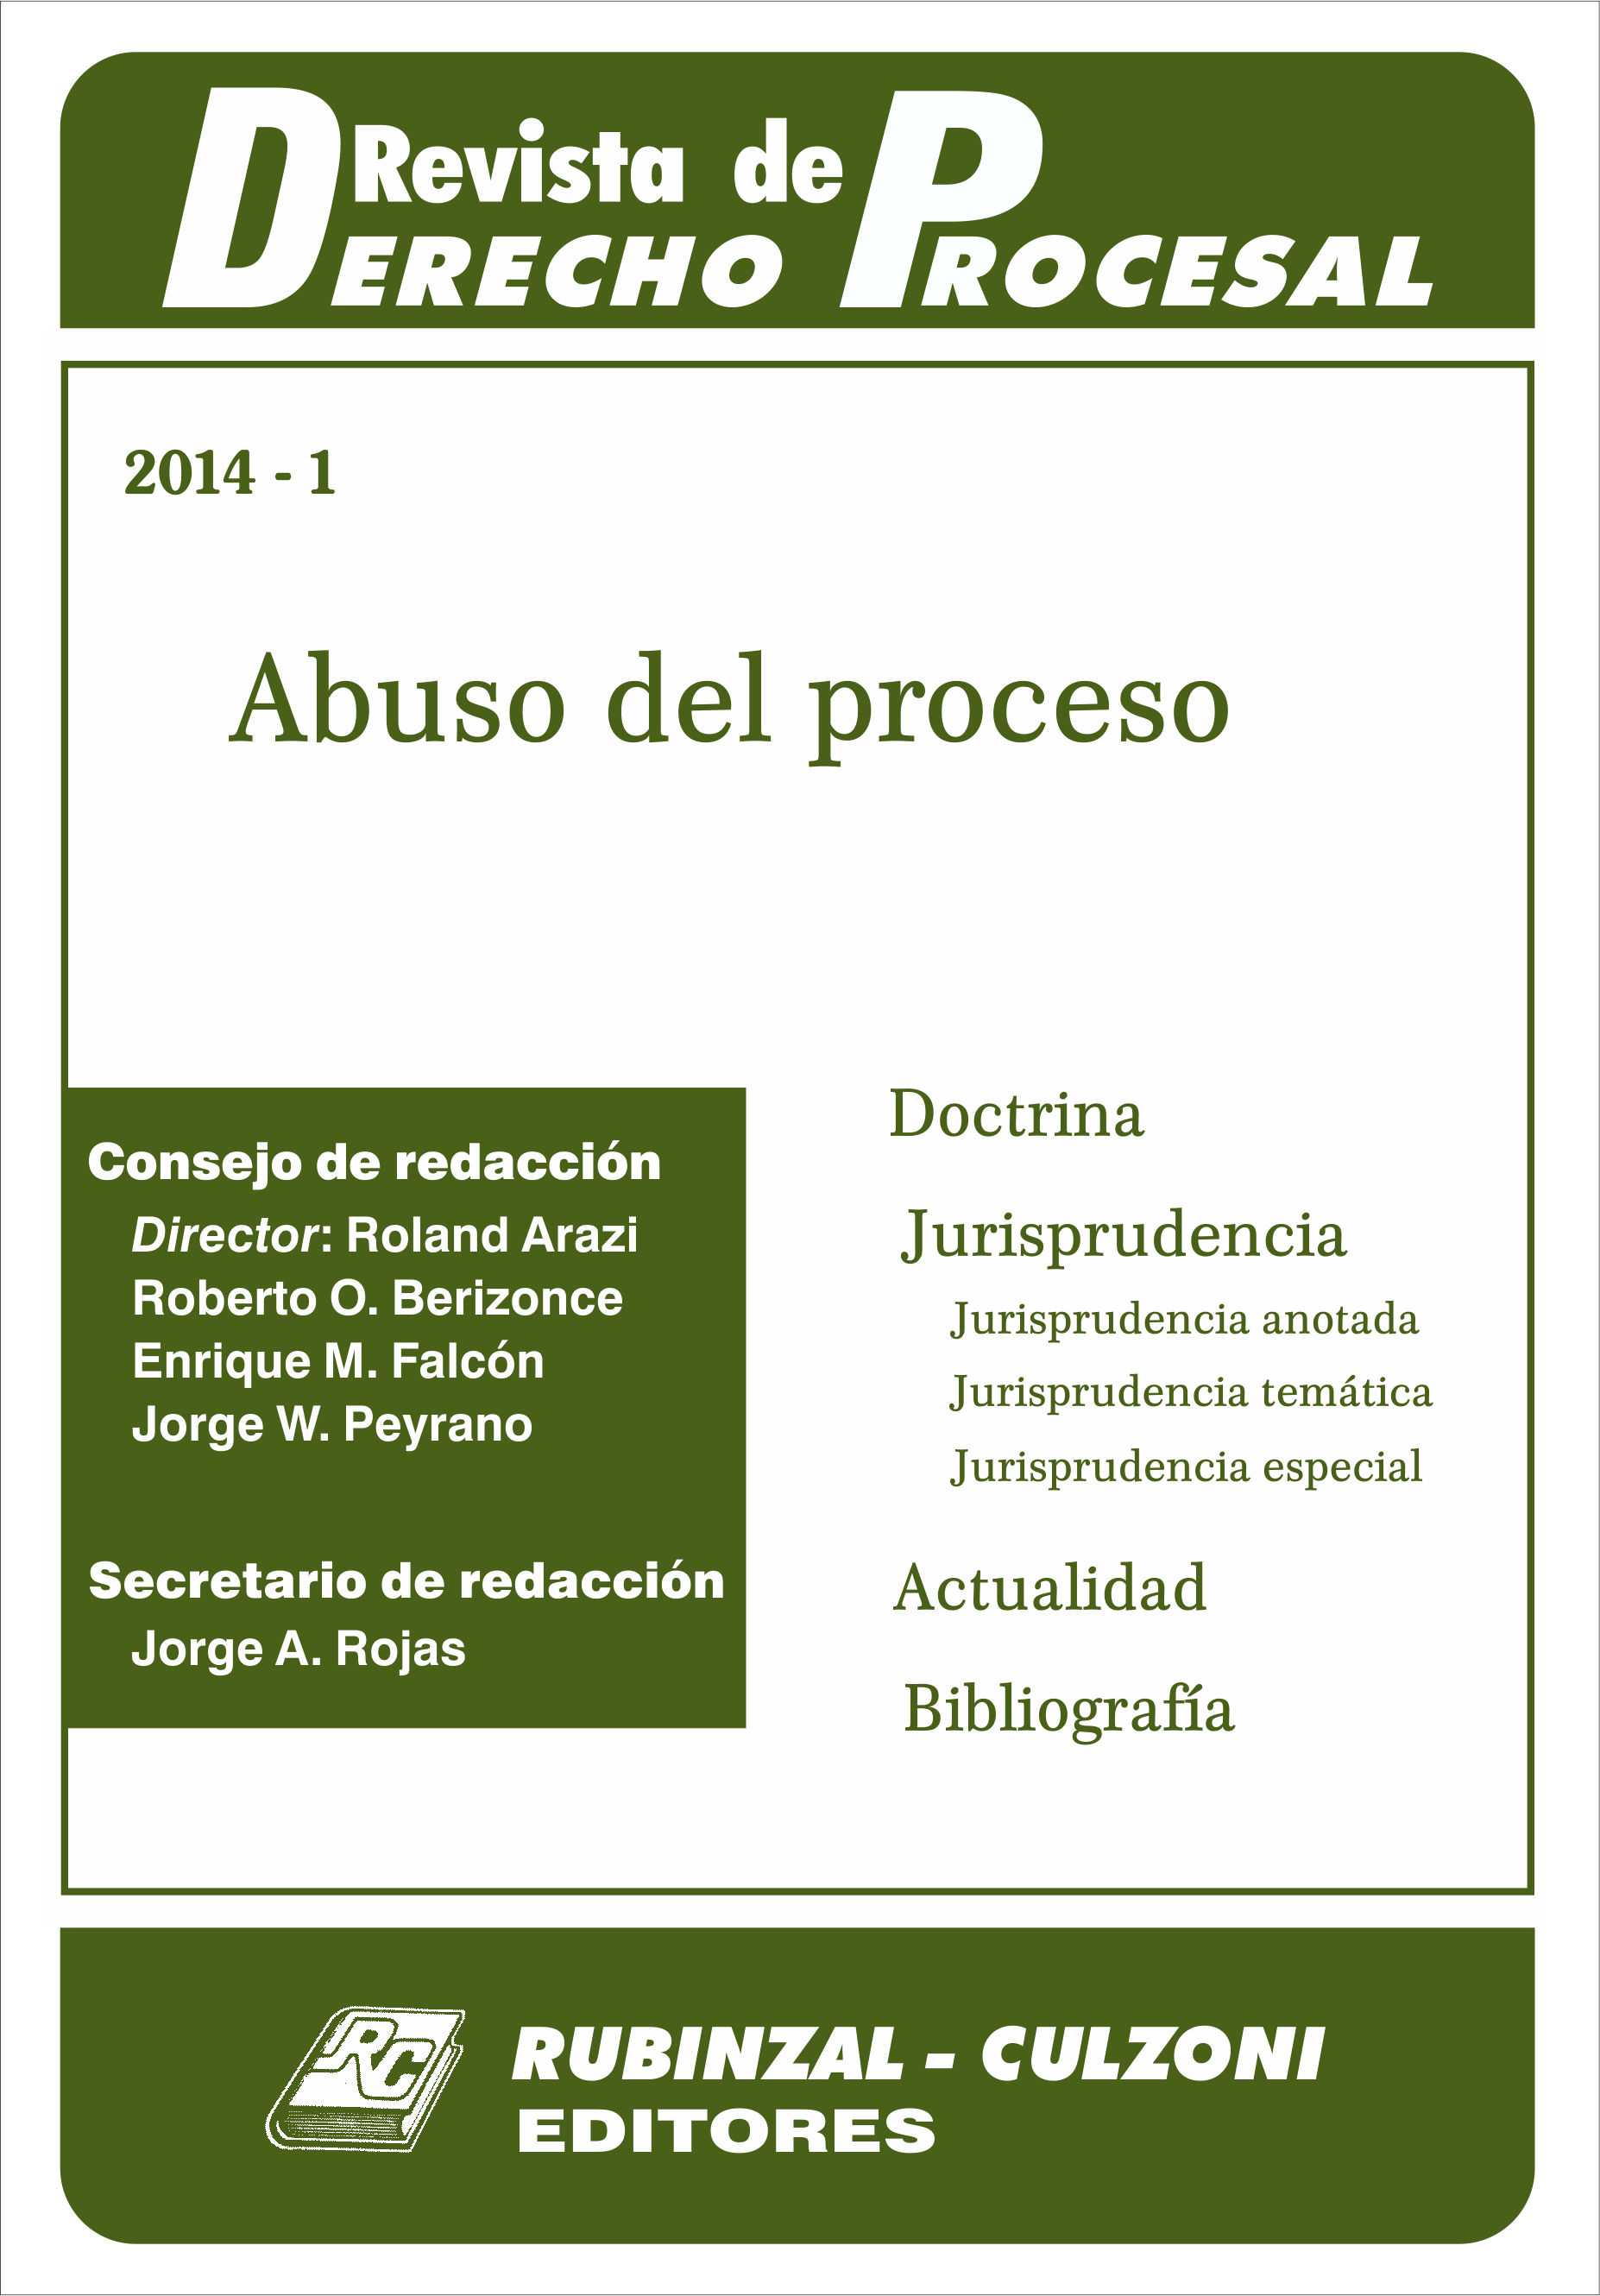 Revista de Derecho Procesal - Abuso del proceso.